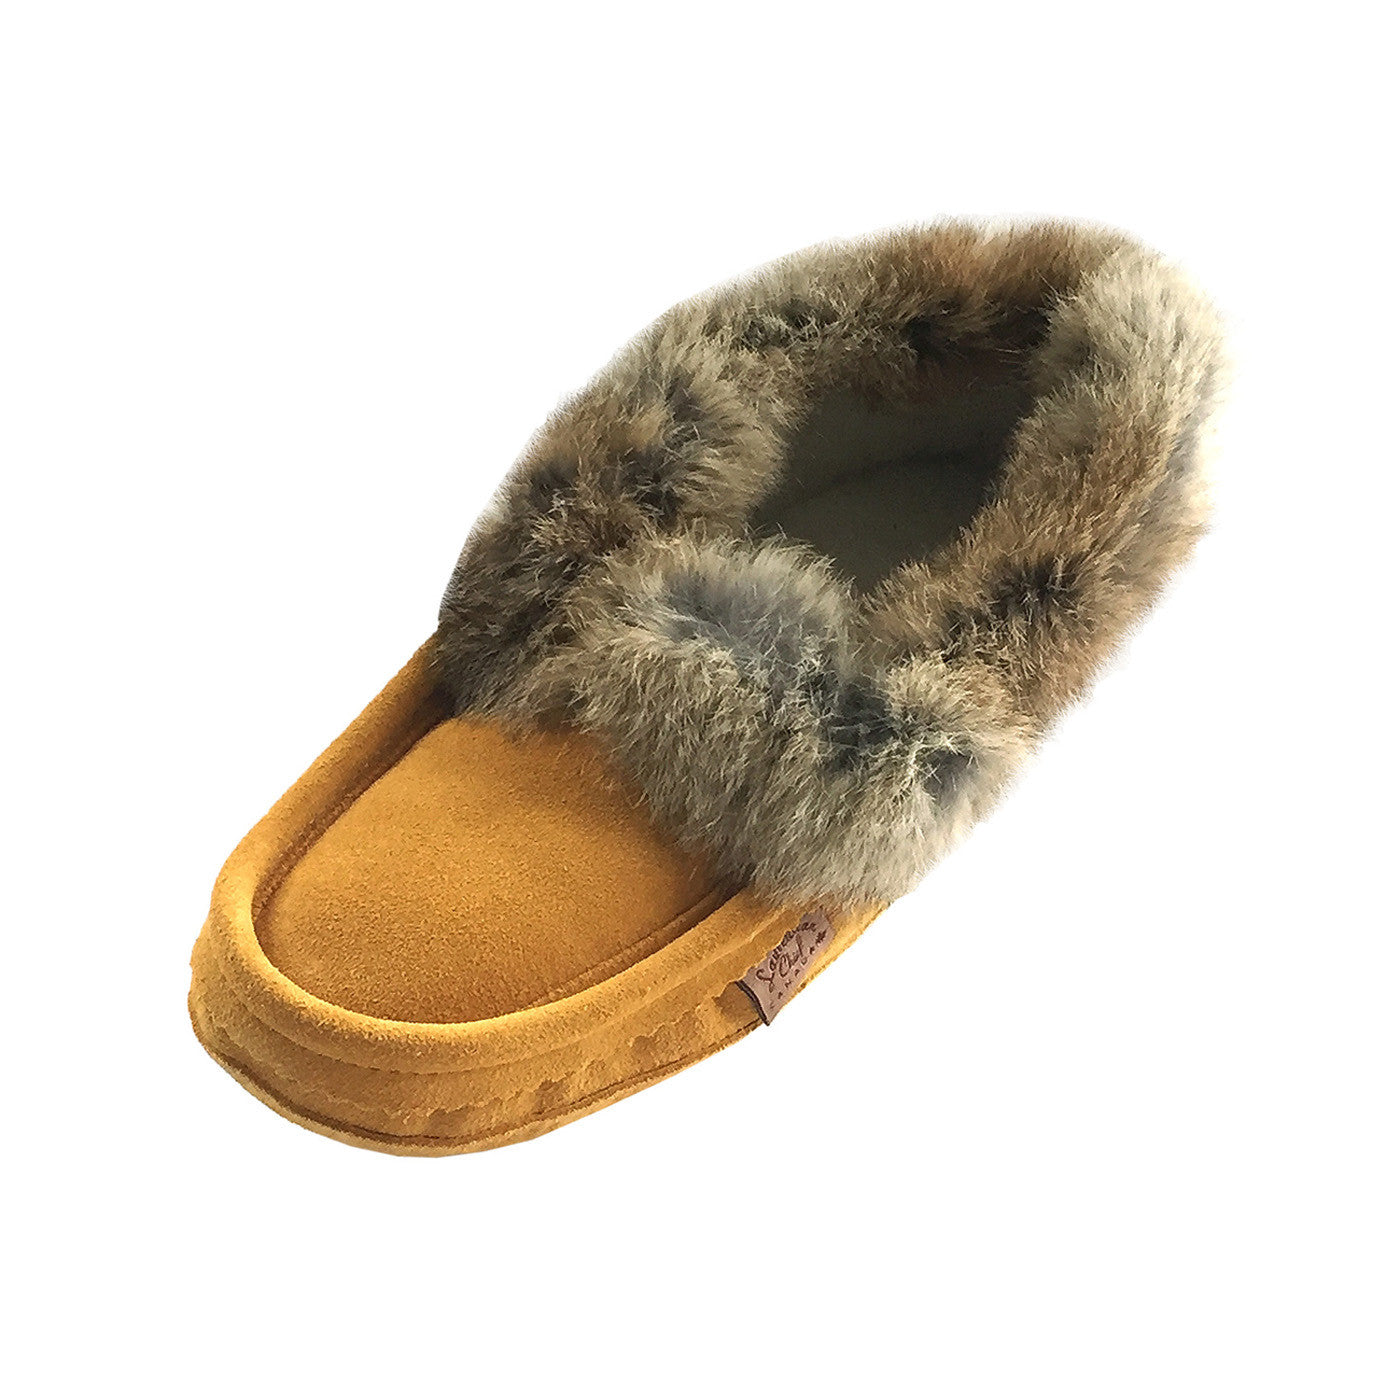 Socialist Tæl op kaustisk Men's Lined Genuine Suede Moccasin Slippers with Real Rabbit Fur Trim –  Leather-Moccasins